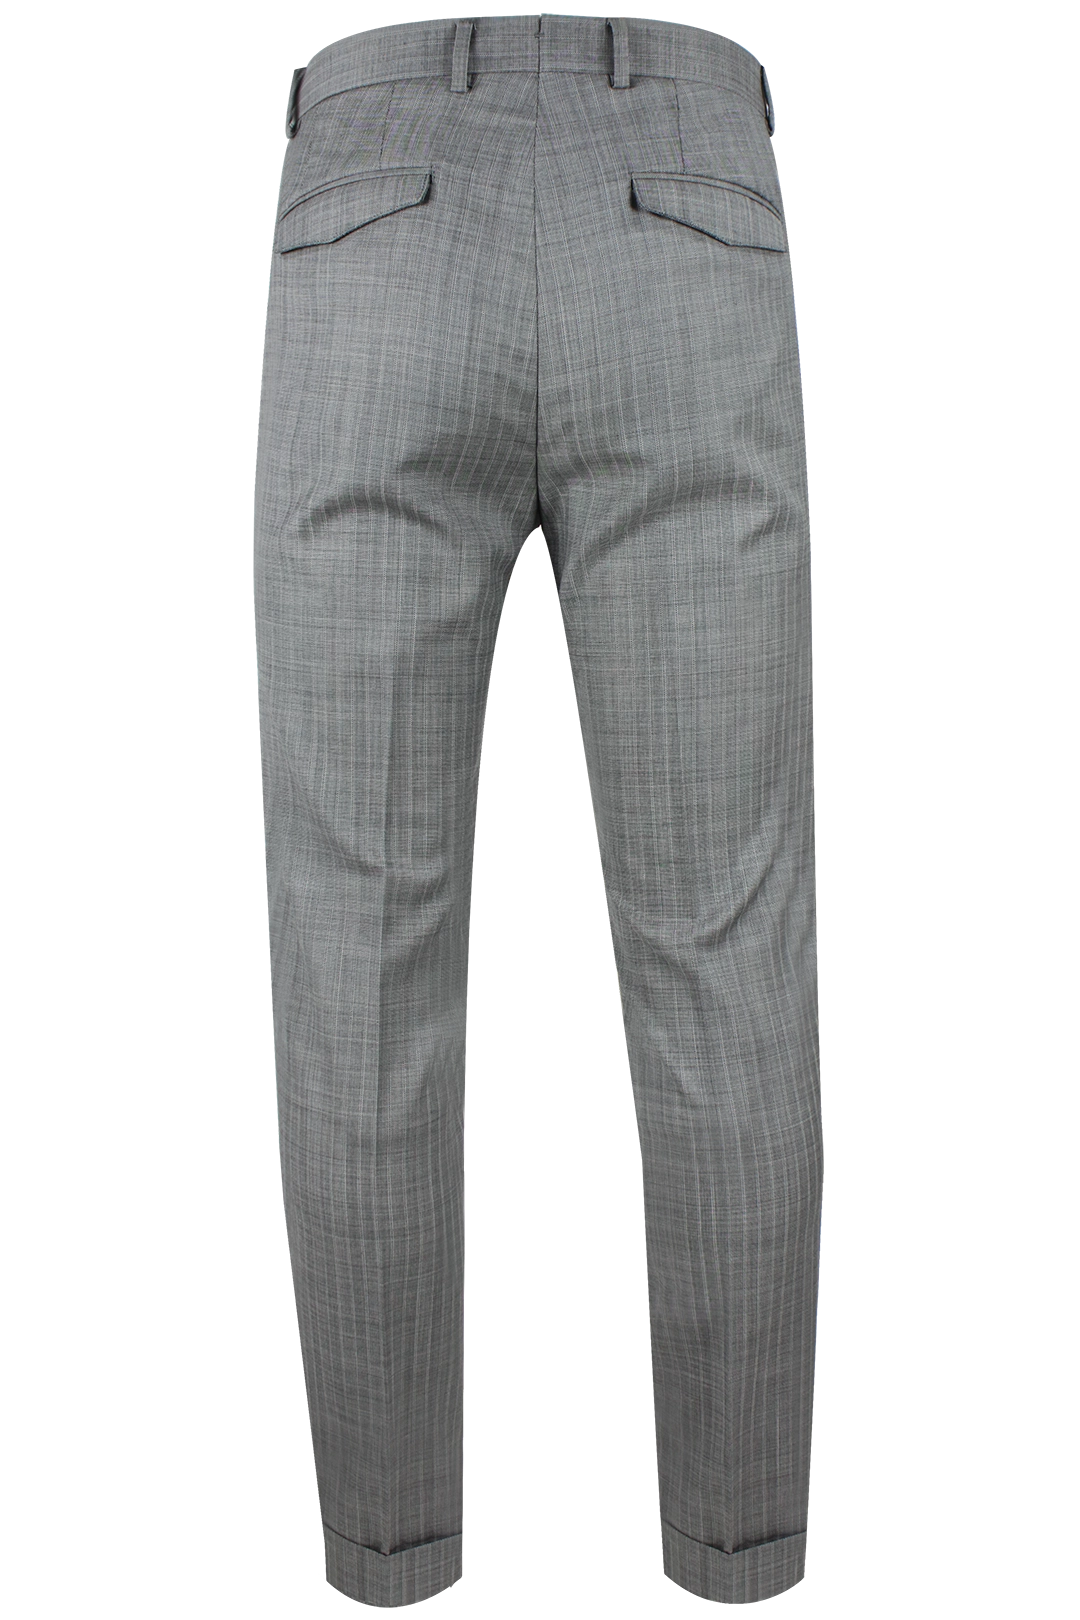 Pantalone risvolto tela di lana grigio gessato retro